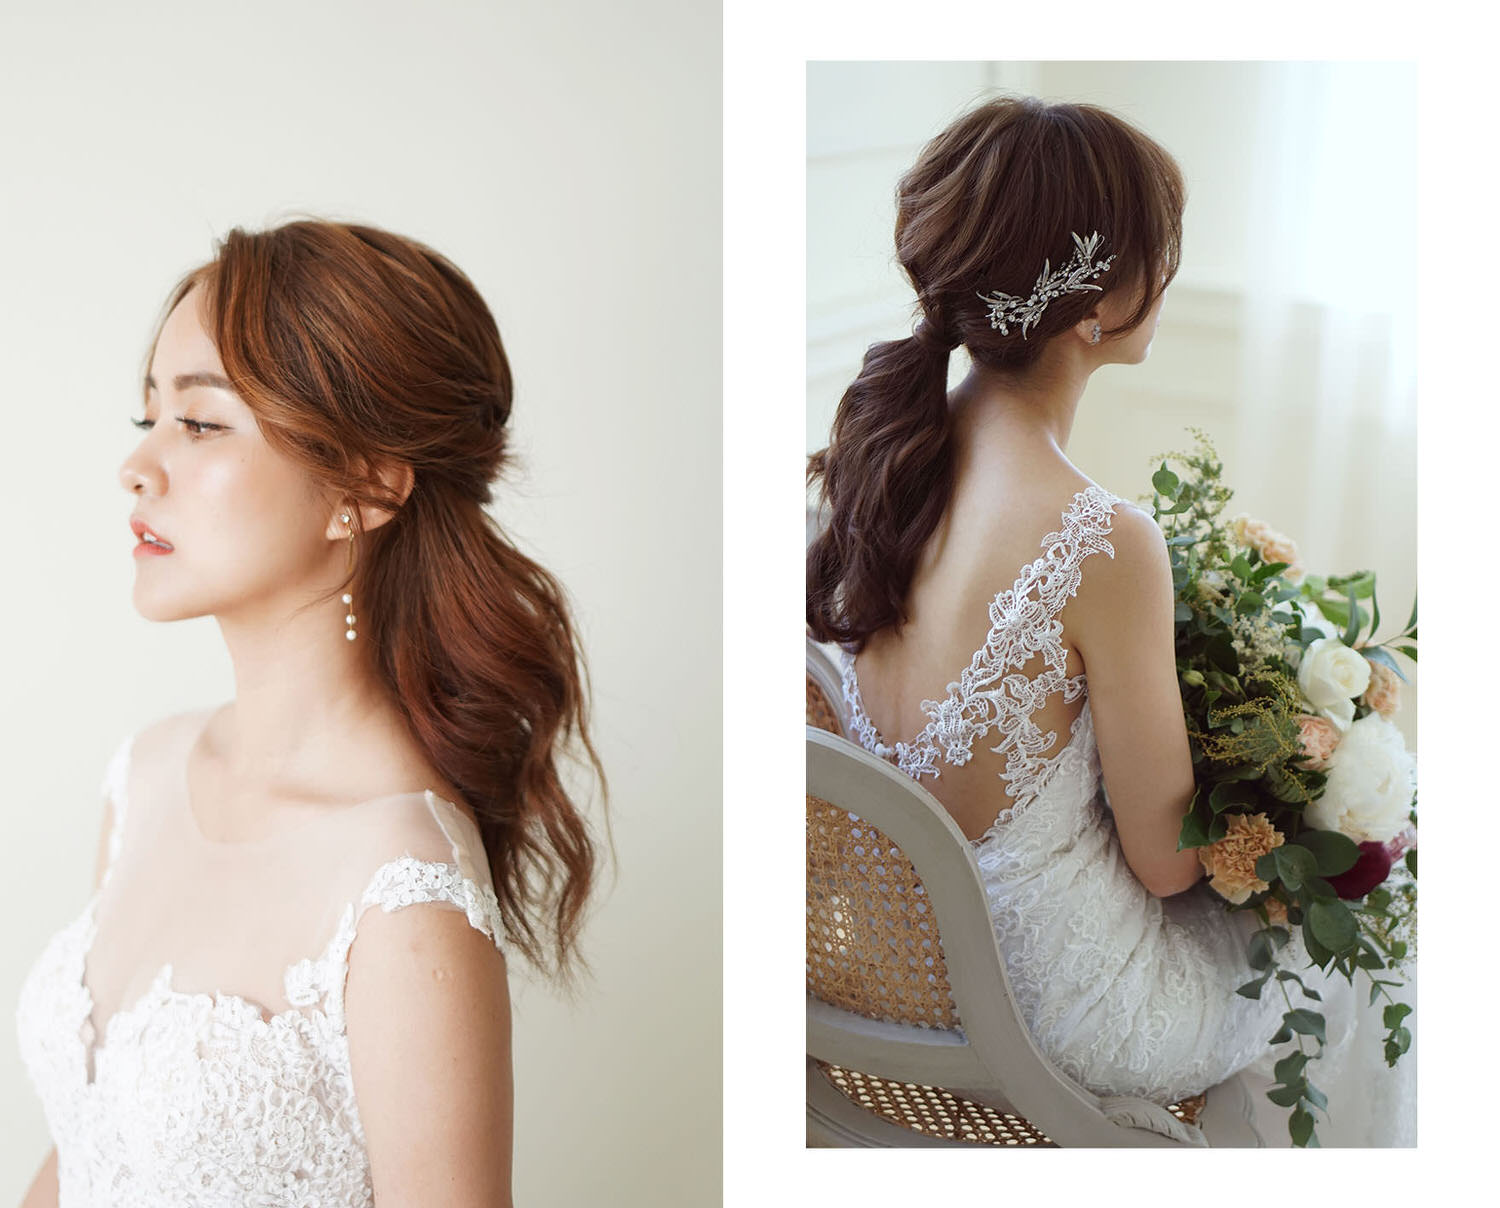 婚礼新娘头发造型图片-图库-五毛网